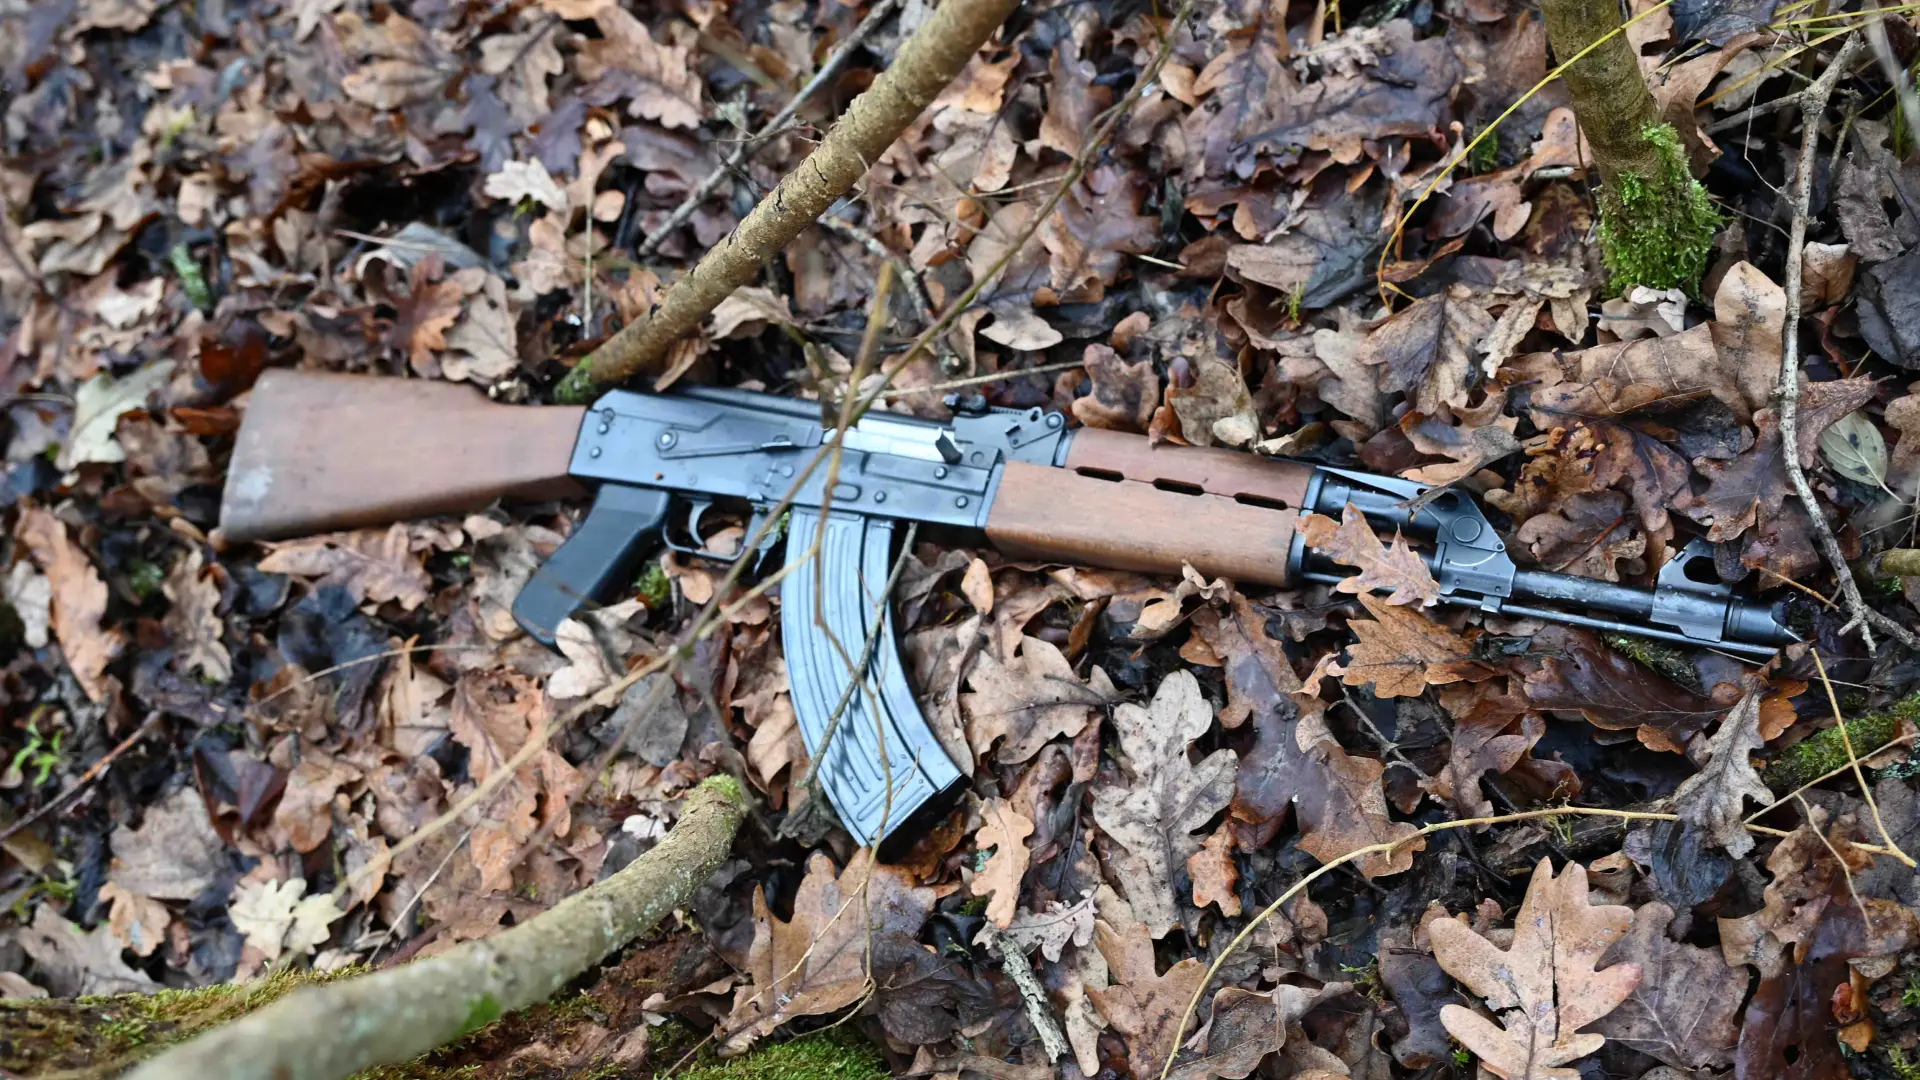 žandarmerija, kalašnjikov, AK-47, zaplenjeno oružje, zaplena - foto MUP Srbije (6)-65b87ec437aef.webp